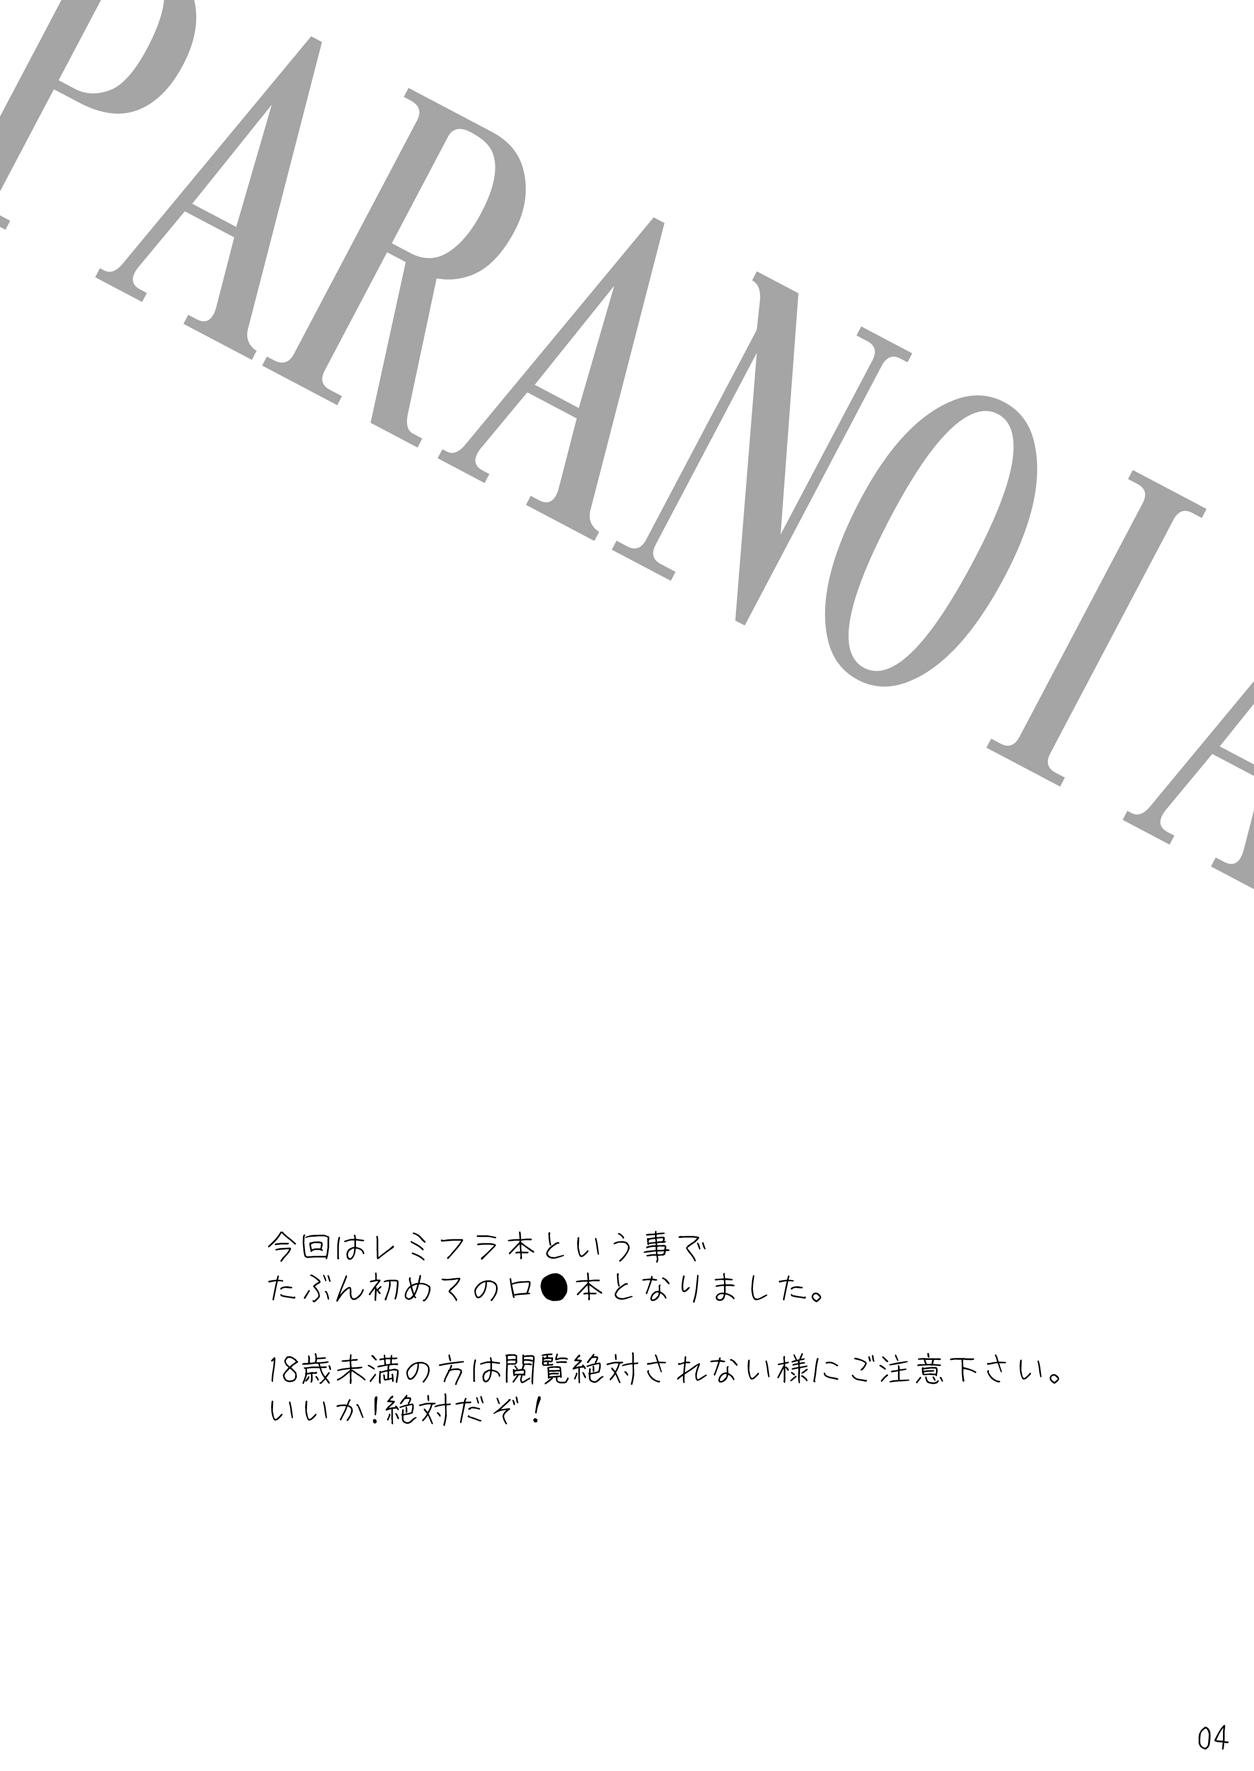 Kihi Danzai + PARANOIA + Tora no I wo Karite Koi 19